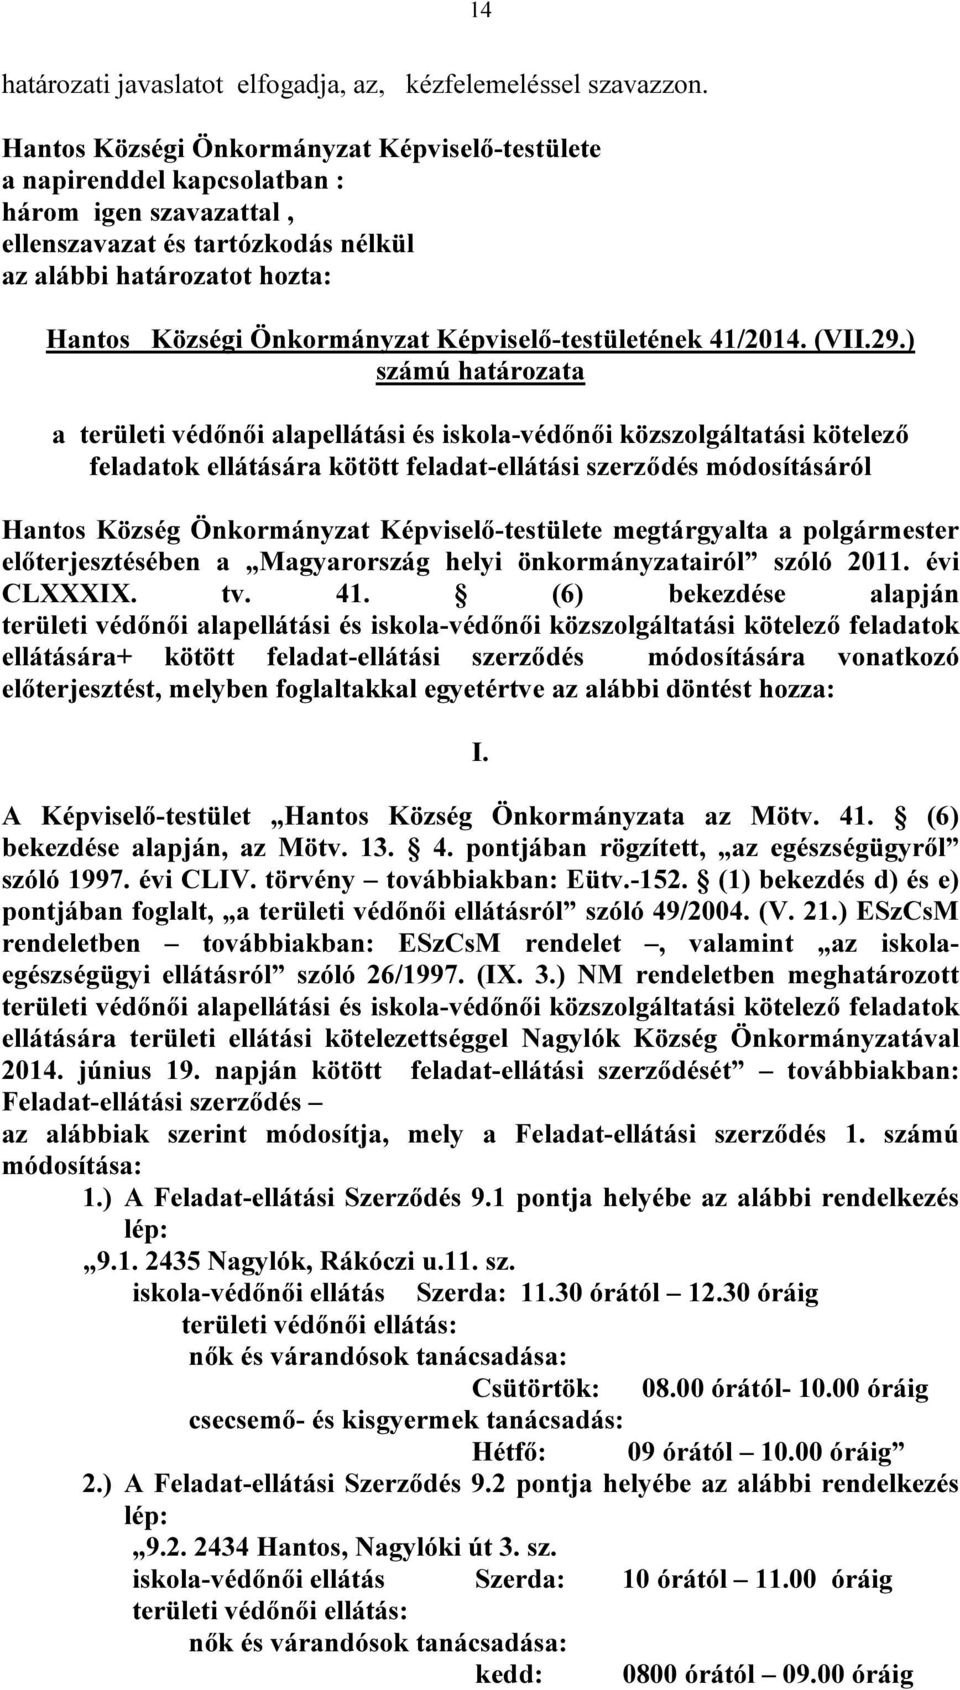 Képviselő-testületének 41/2014. (VII.29.